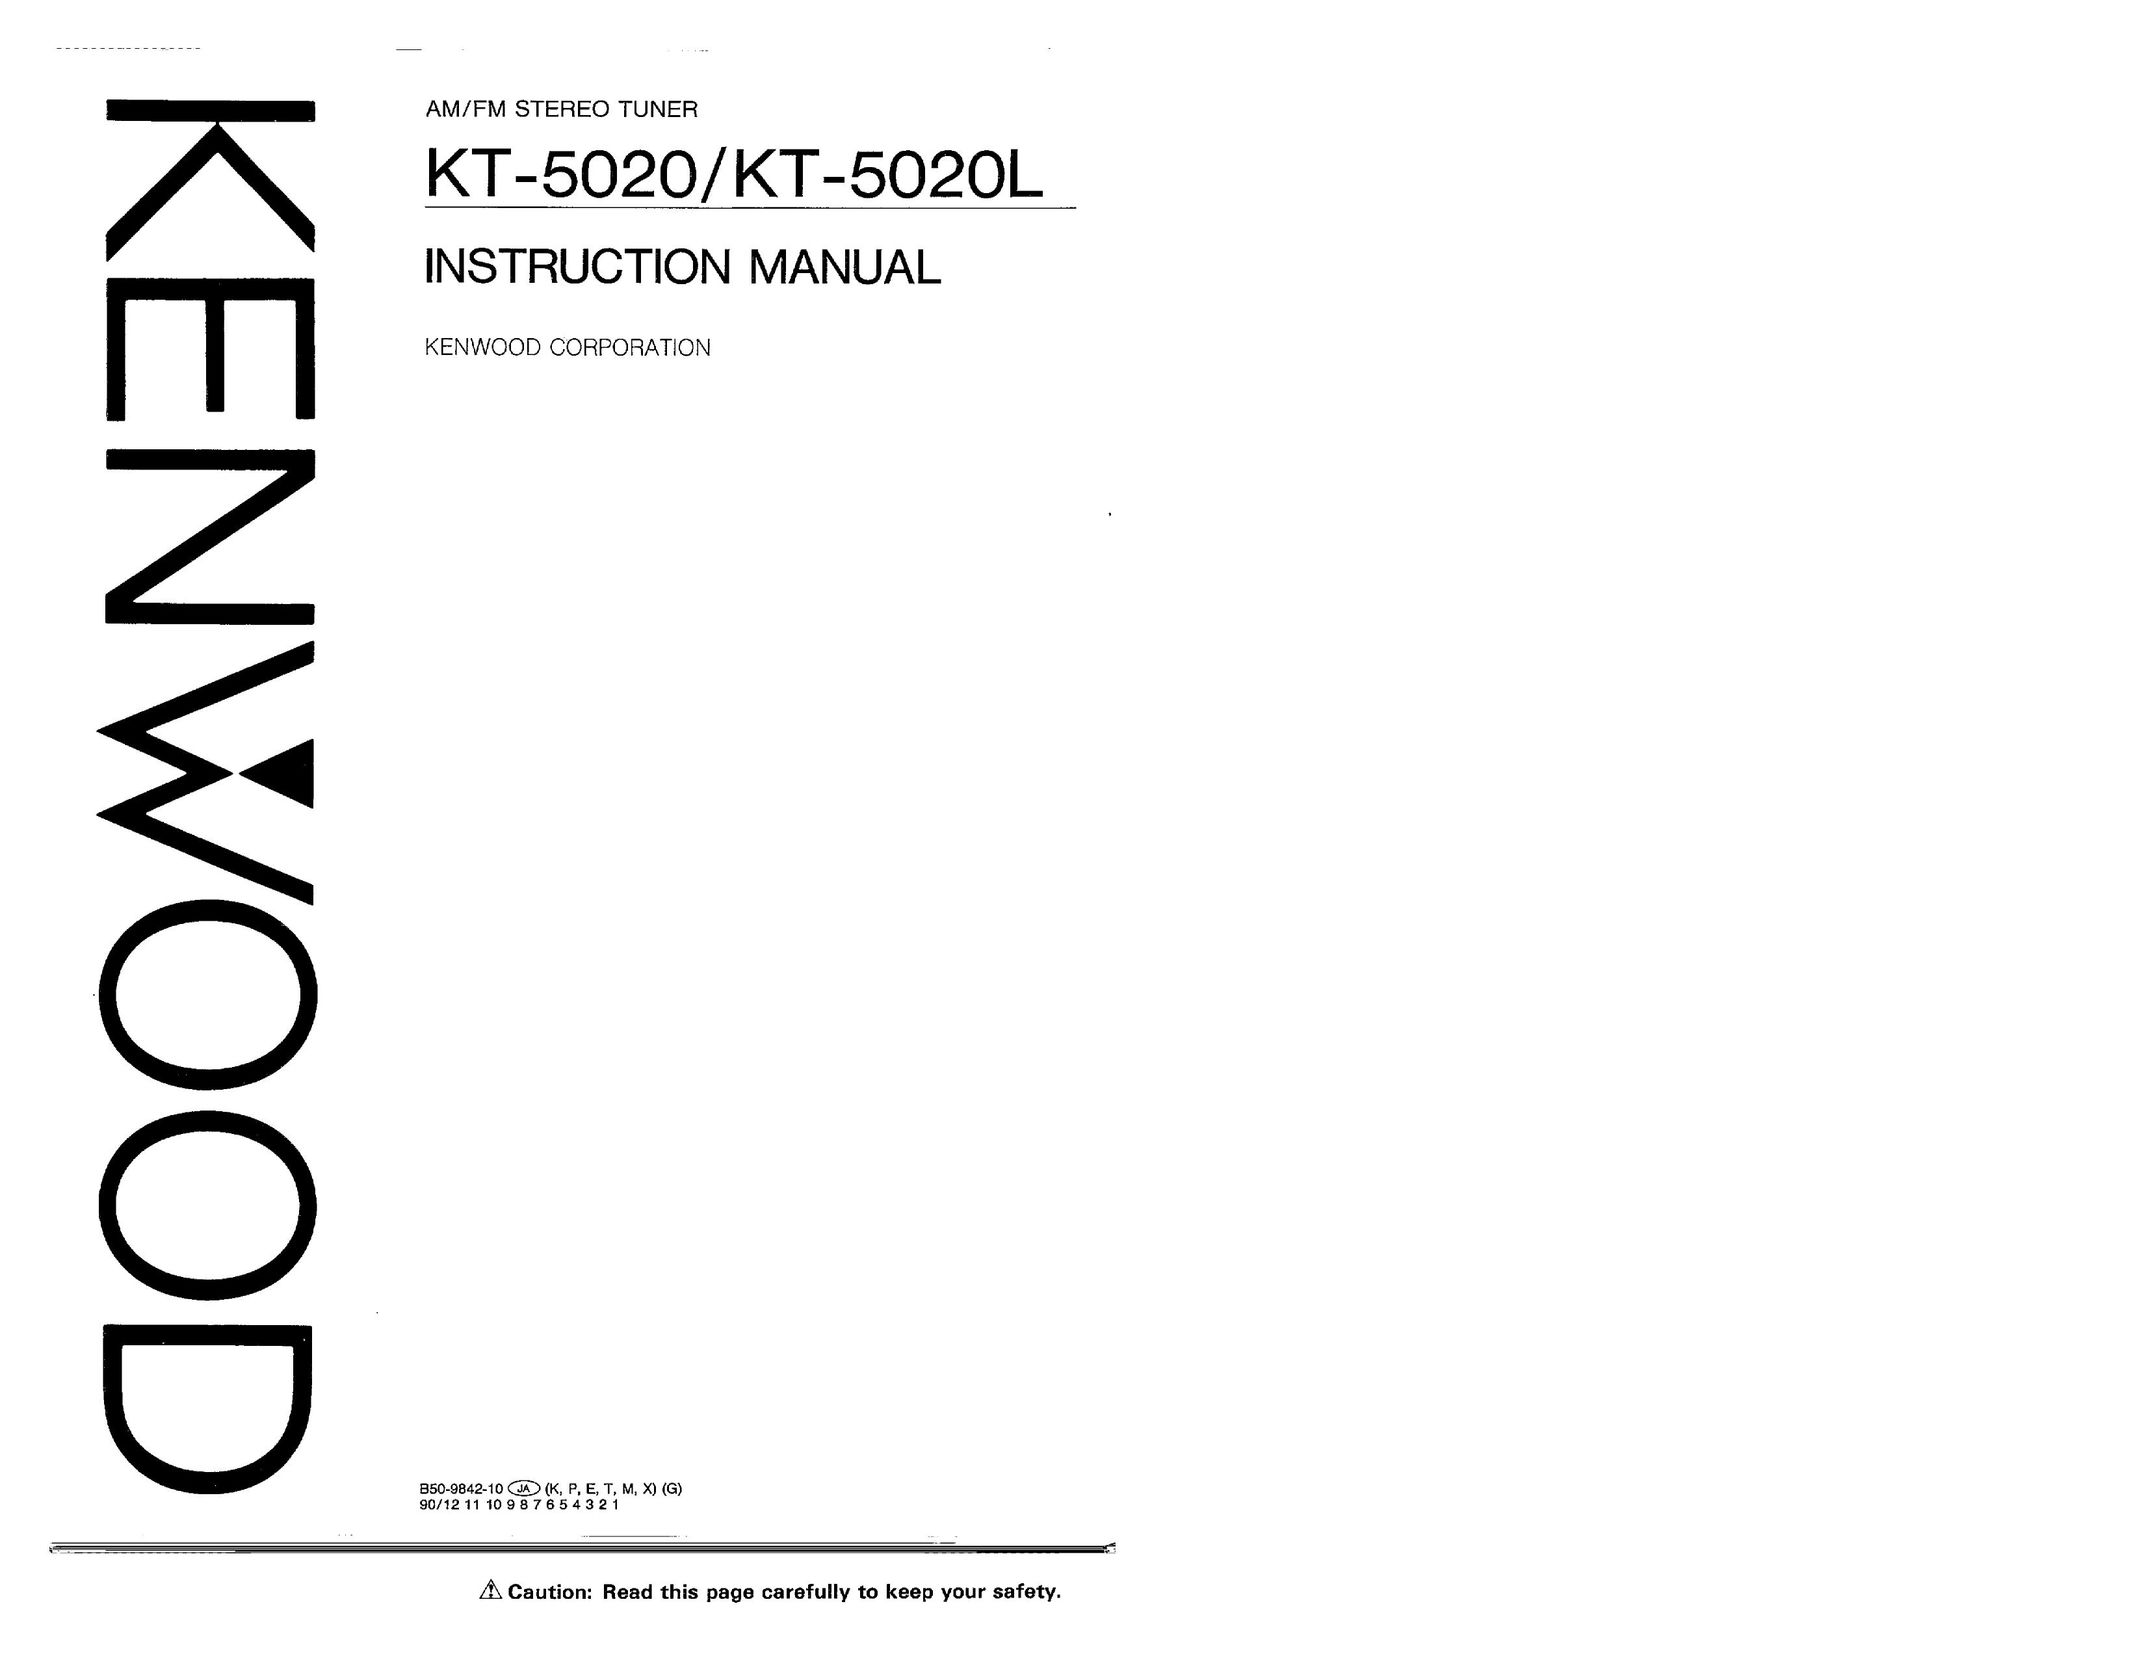 Kenwood KT-5020L Home Security System User Manual